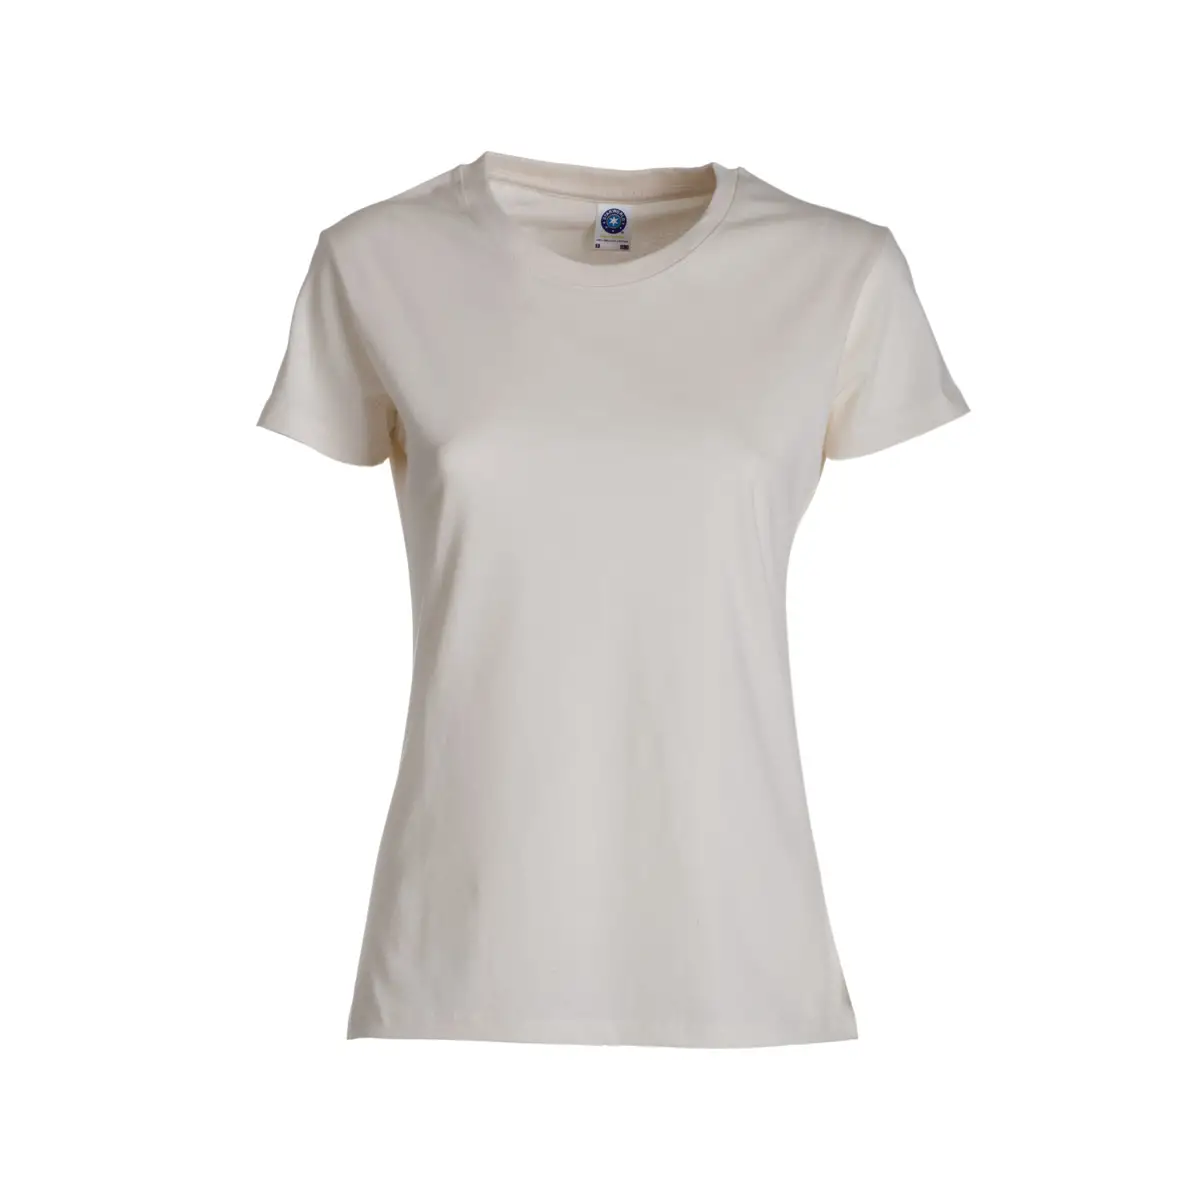 T-Shirt Donna Cotone Manica Corta Personalizzata - Starworld